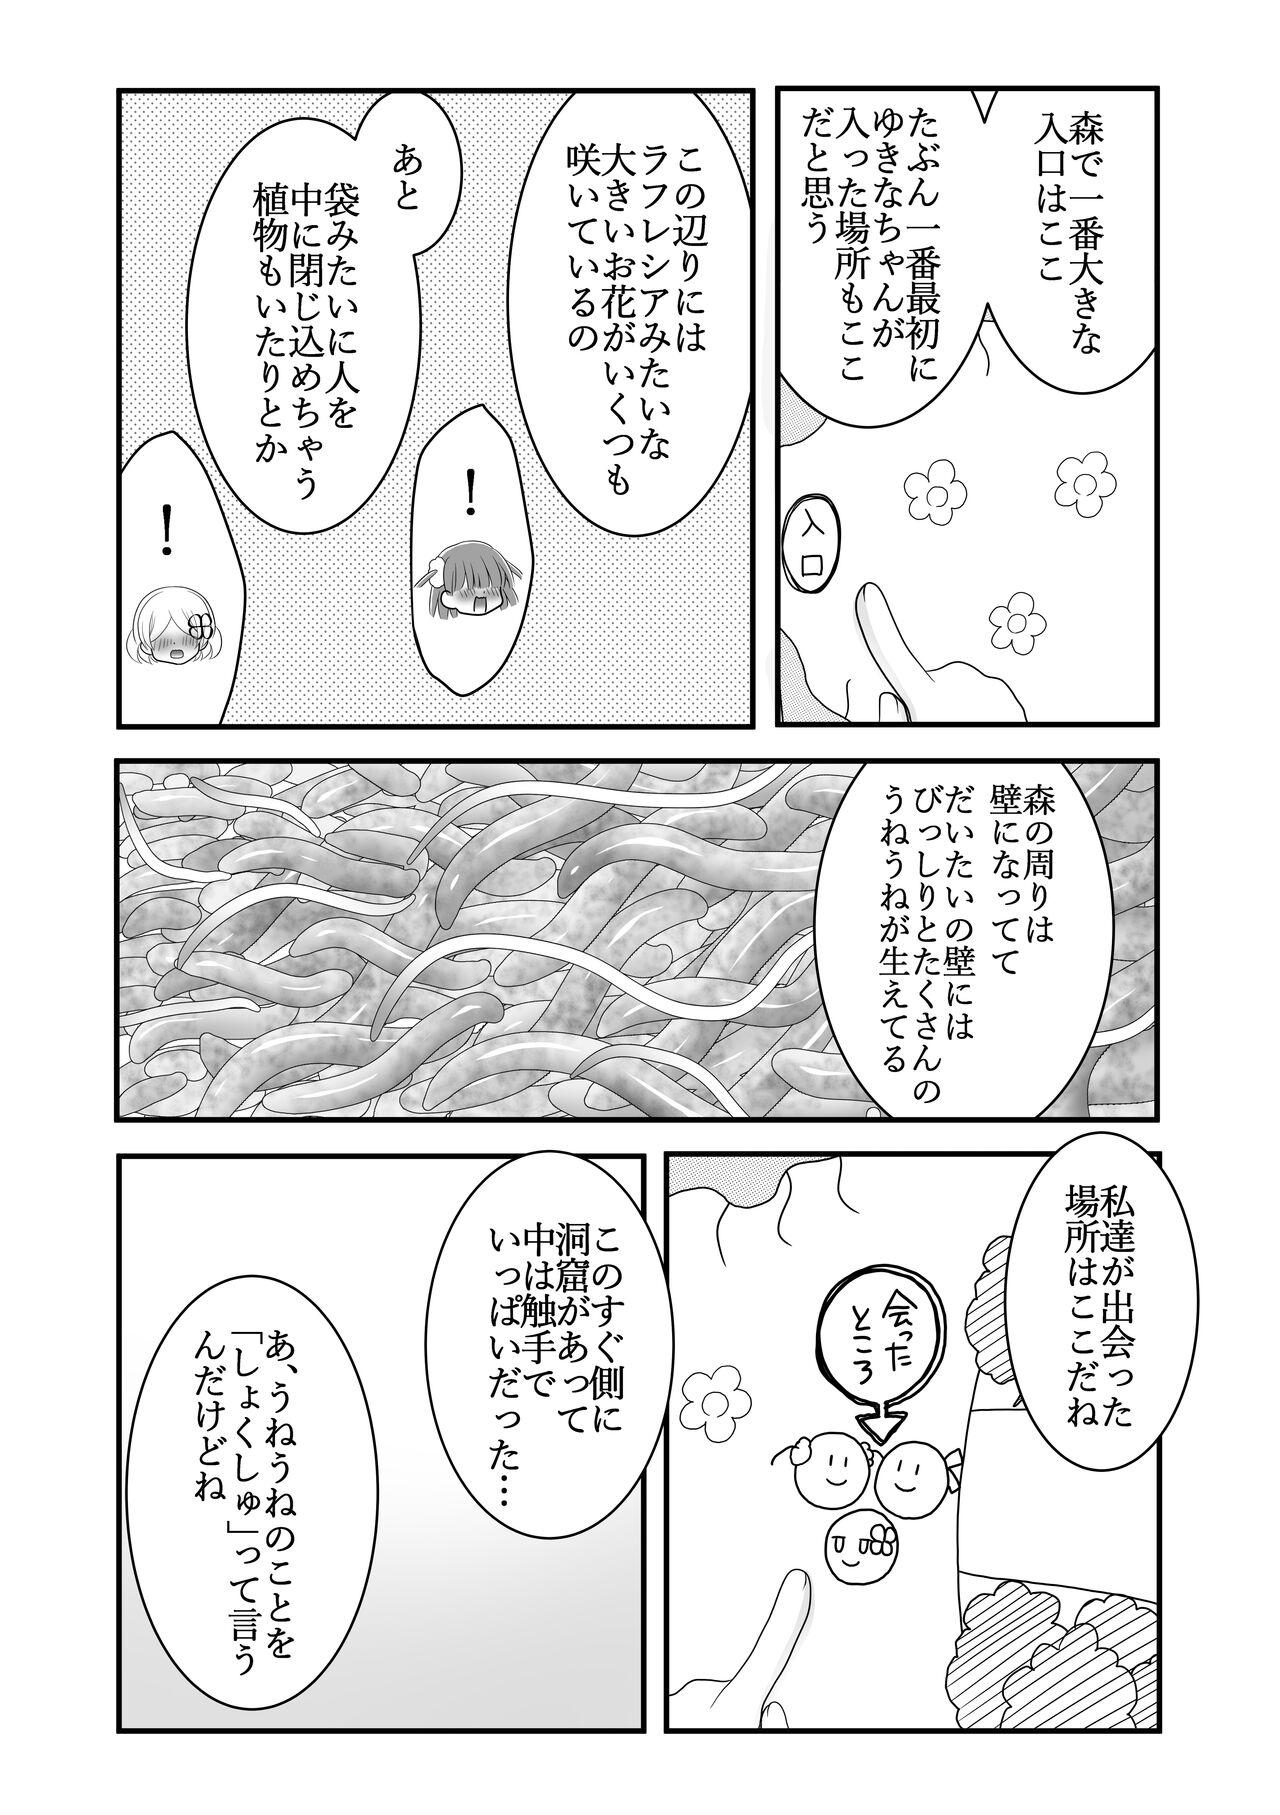 Stepsister Maigo no Mori no Kusuguribana 5 - Original Blackcock - Page 3